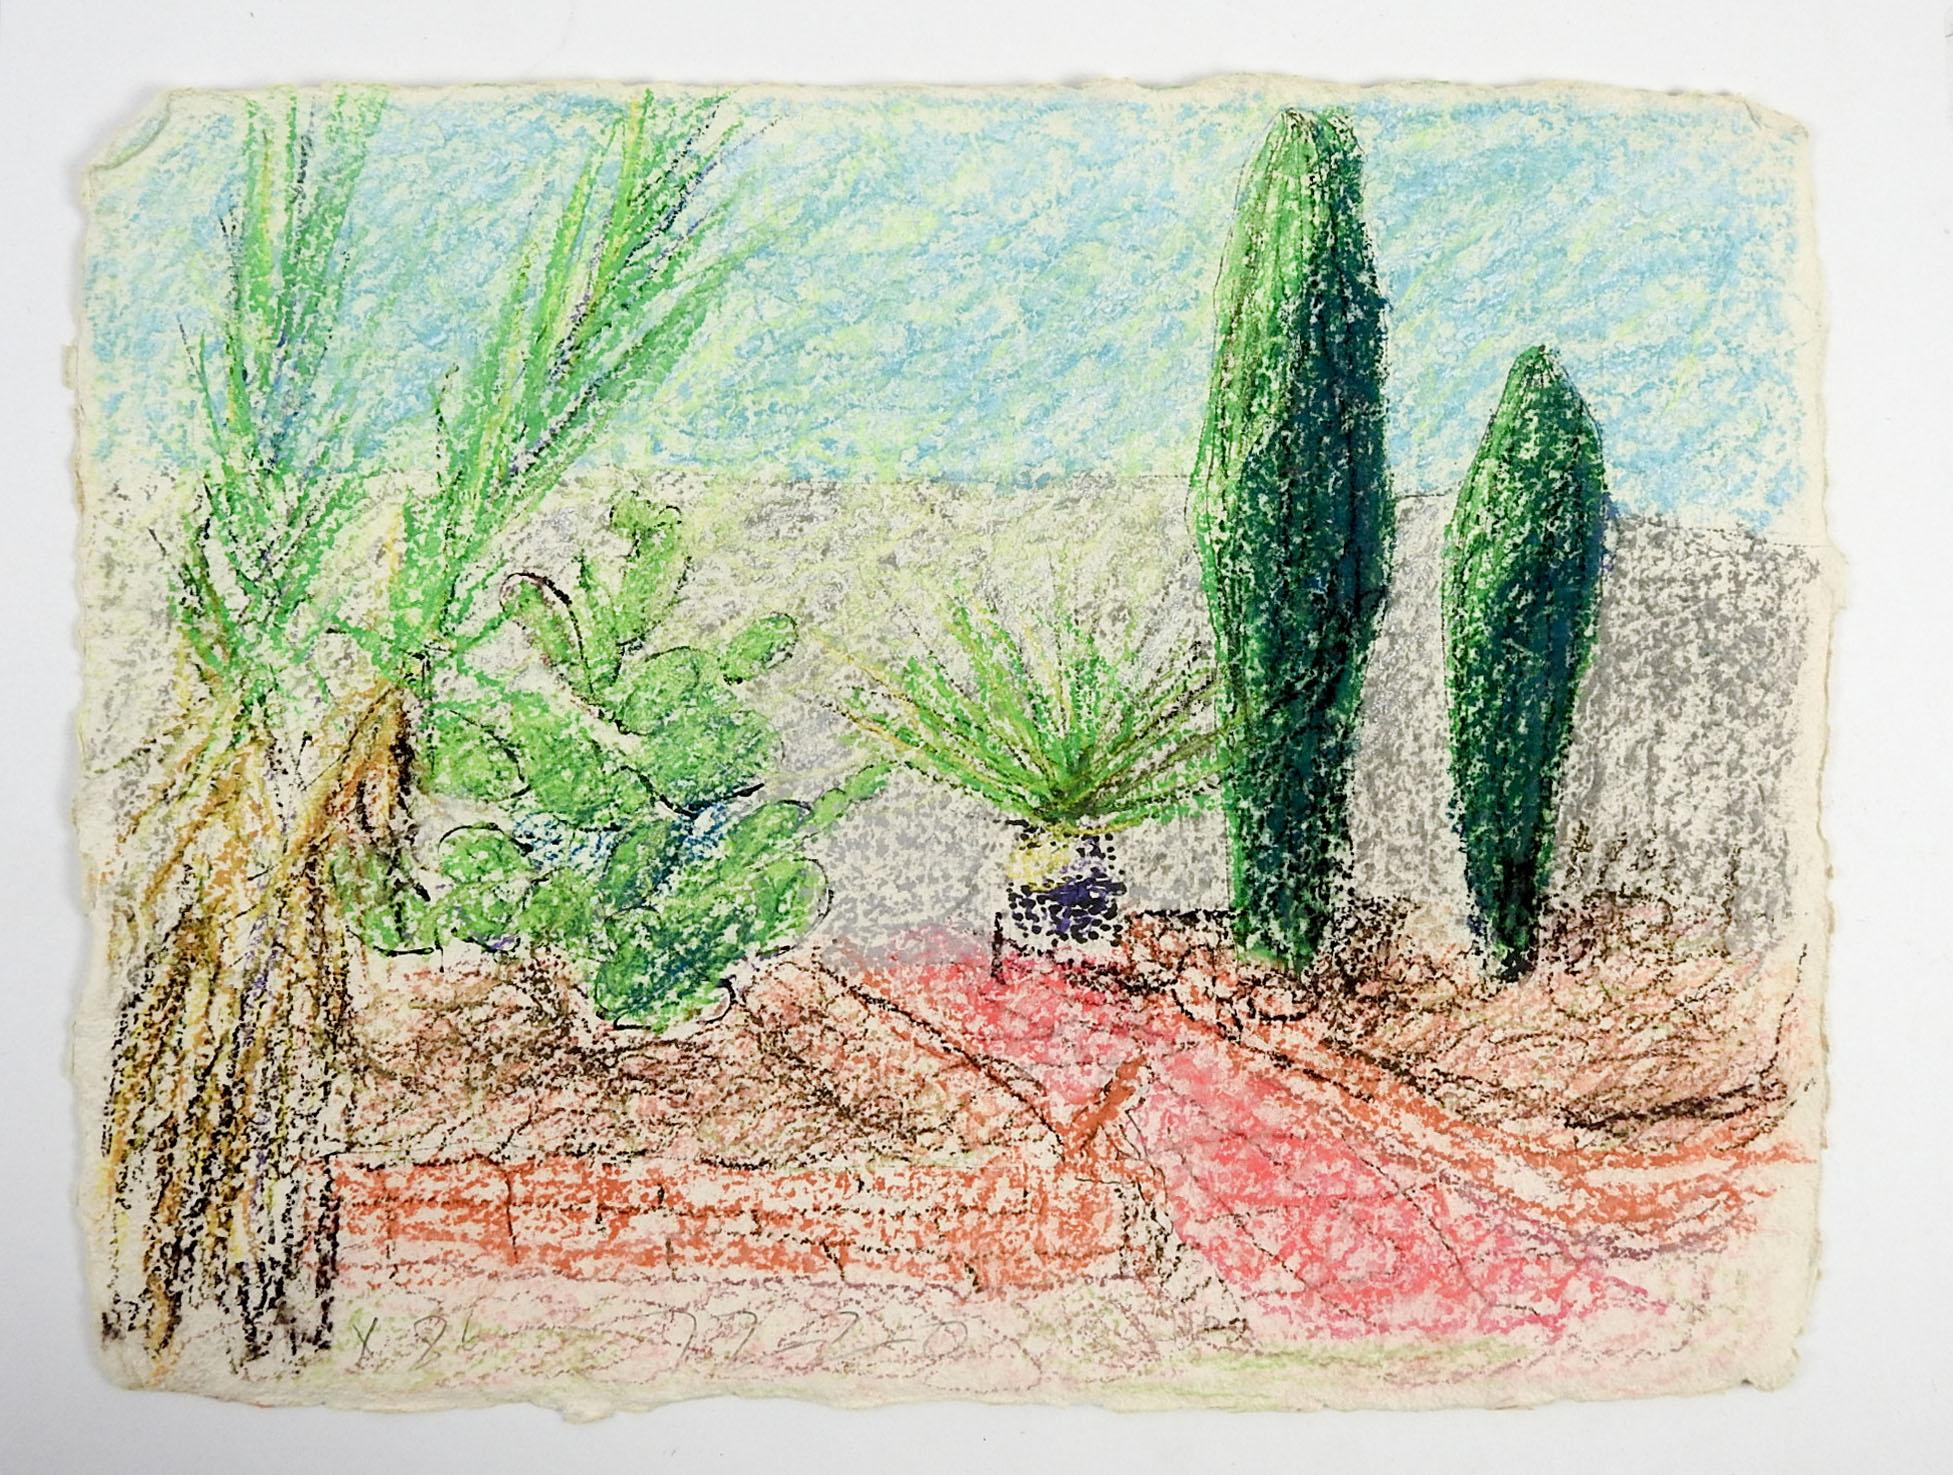 Dessin au crayon de couleur d'un jardin de feuillage désertique sur papier lourd fait main par George Turner (1943-2014) Américain.  Signé et daté 1986 dans le coin inférieur gauche. Non encadré.